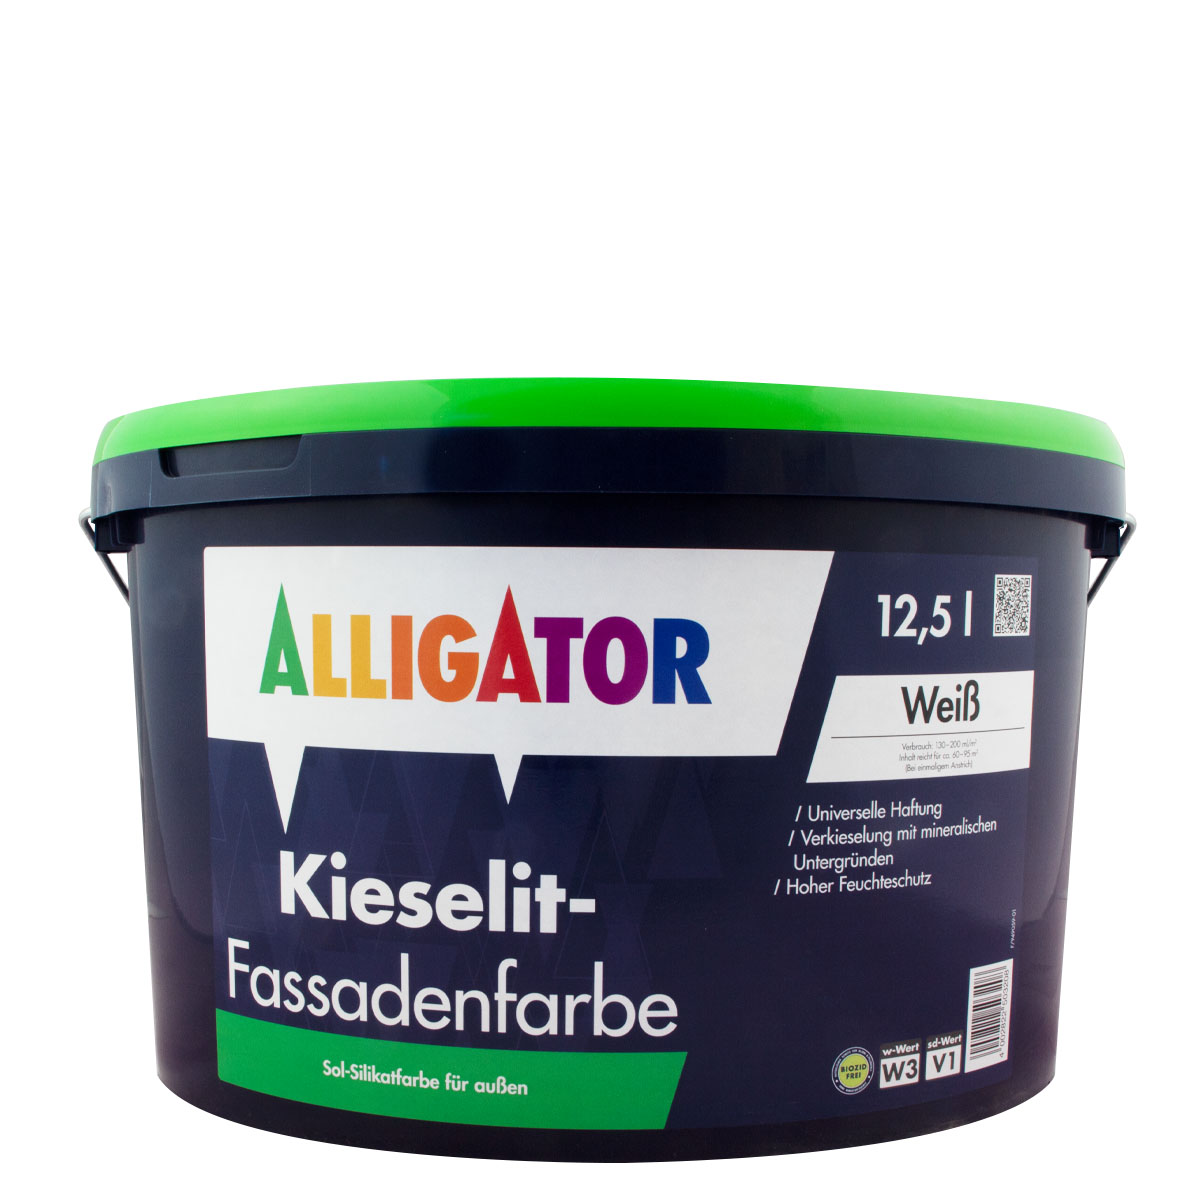 Alligator Kieselit Fassadenfarbe 12,5L weiss, Dispersions-Silikatfarbe, Wetterbeständig